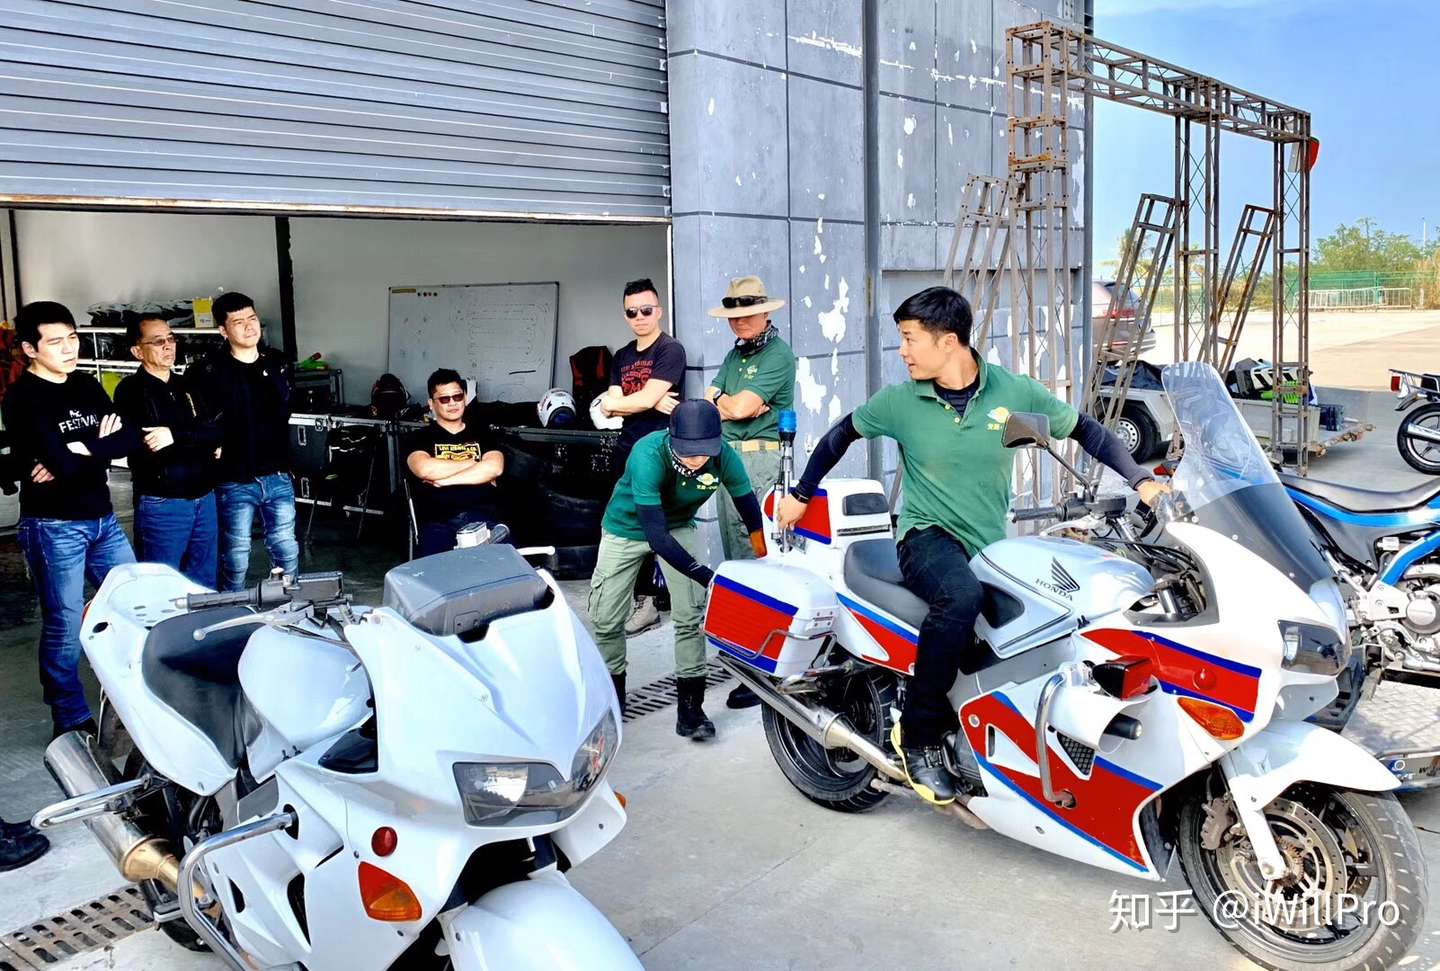 韩国驾照idp完全攻略 摩托车大排量 科目二场内考试 汉城 济州 知乎